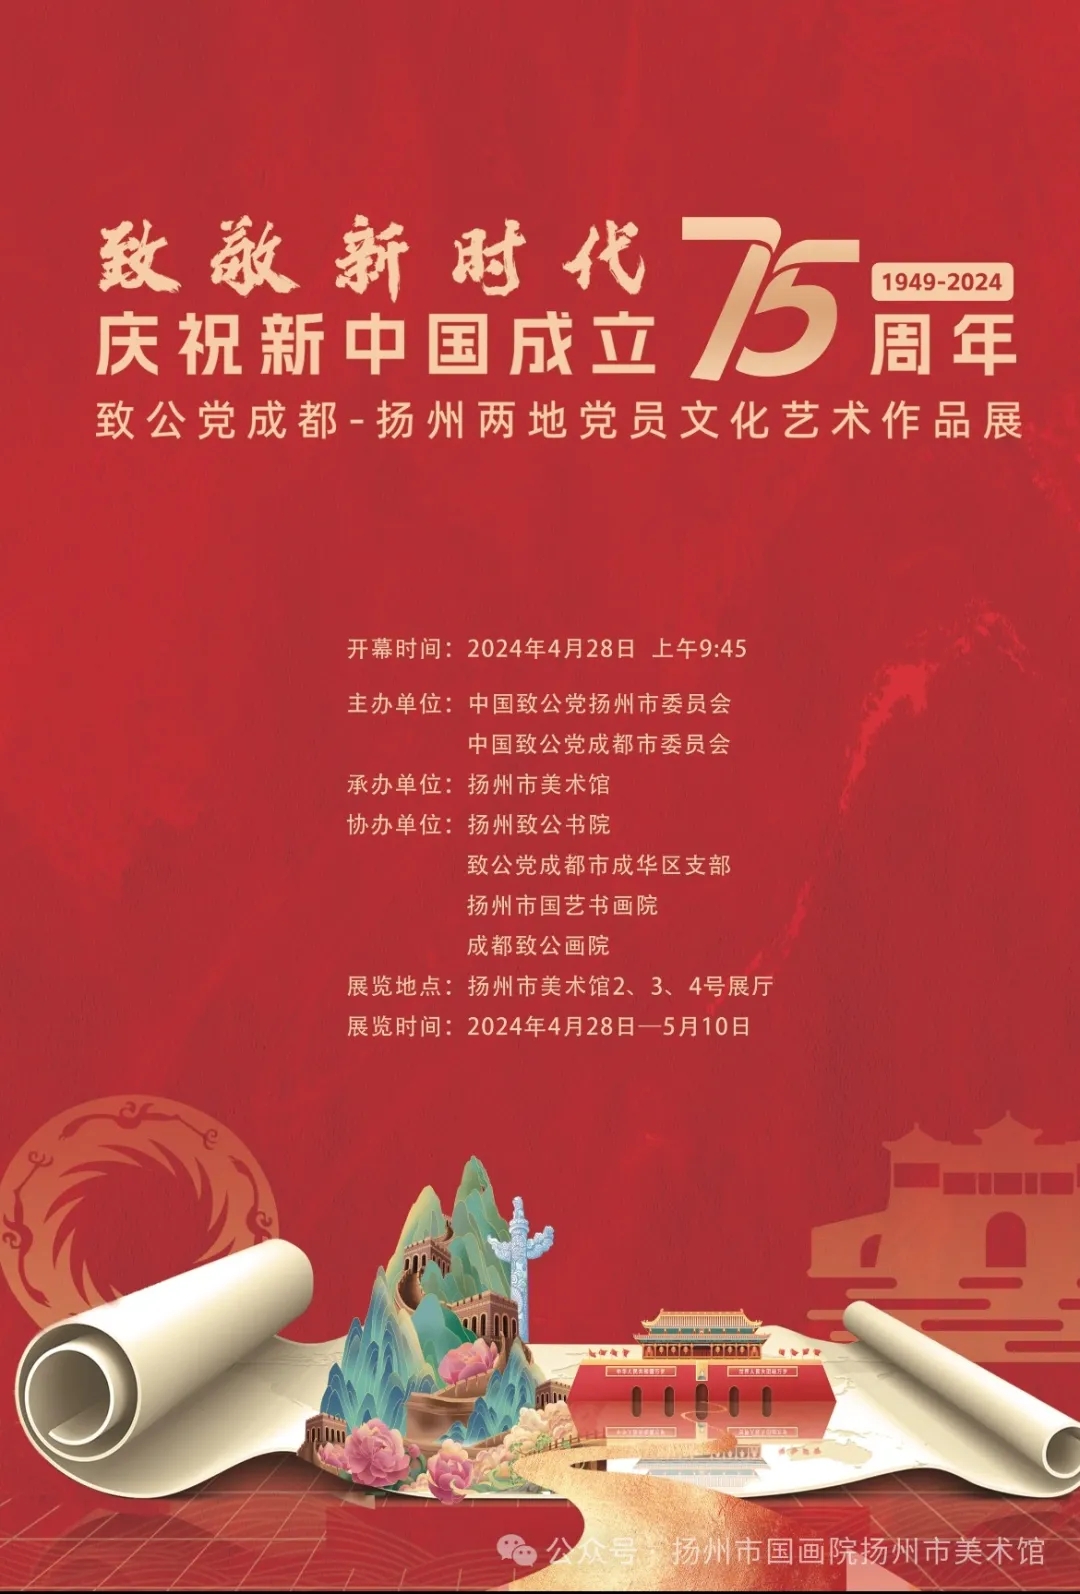 现场｜“致敬新时代——庆祝新中国成立75周年” 致公党成都-扬州两地党员文化艺术作品展开幕